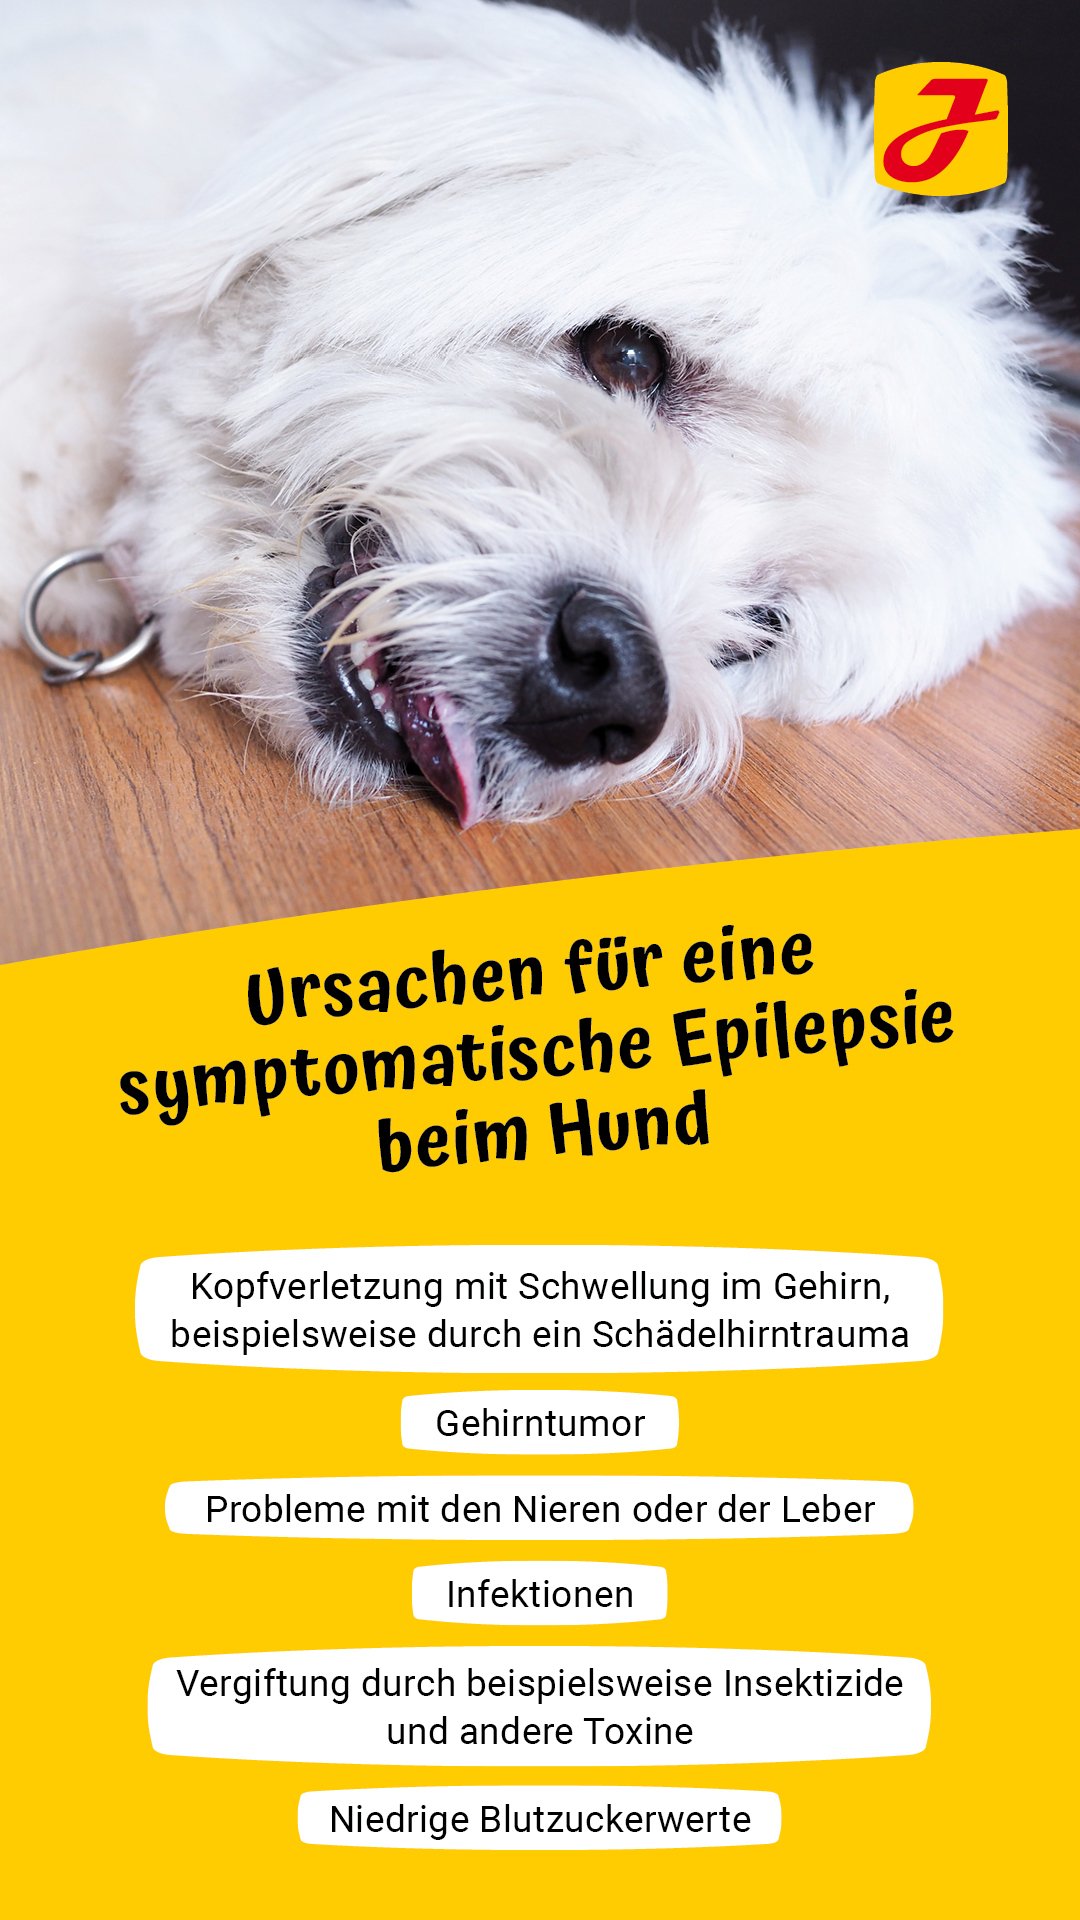 Epilepsie beim Hund ➔ was bedeutet das für Ihre Fellnase?